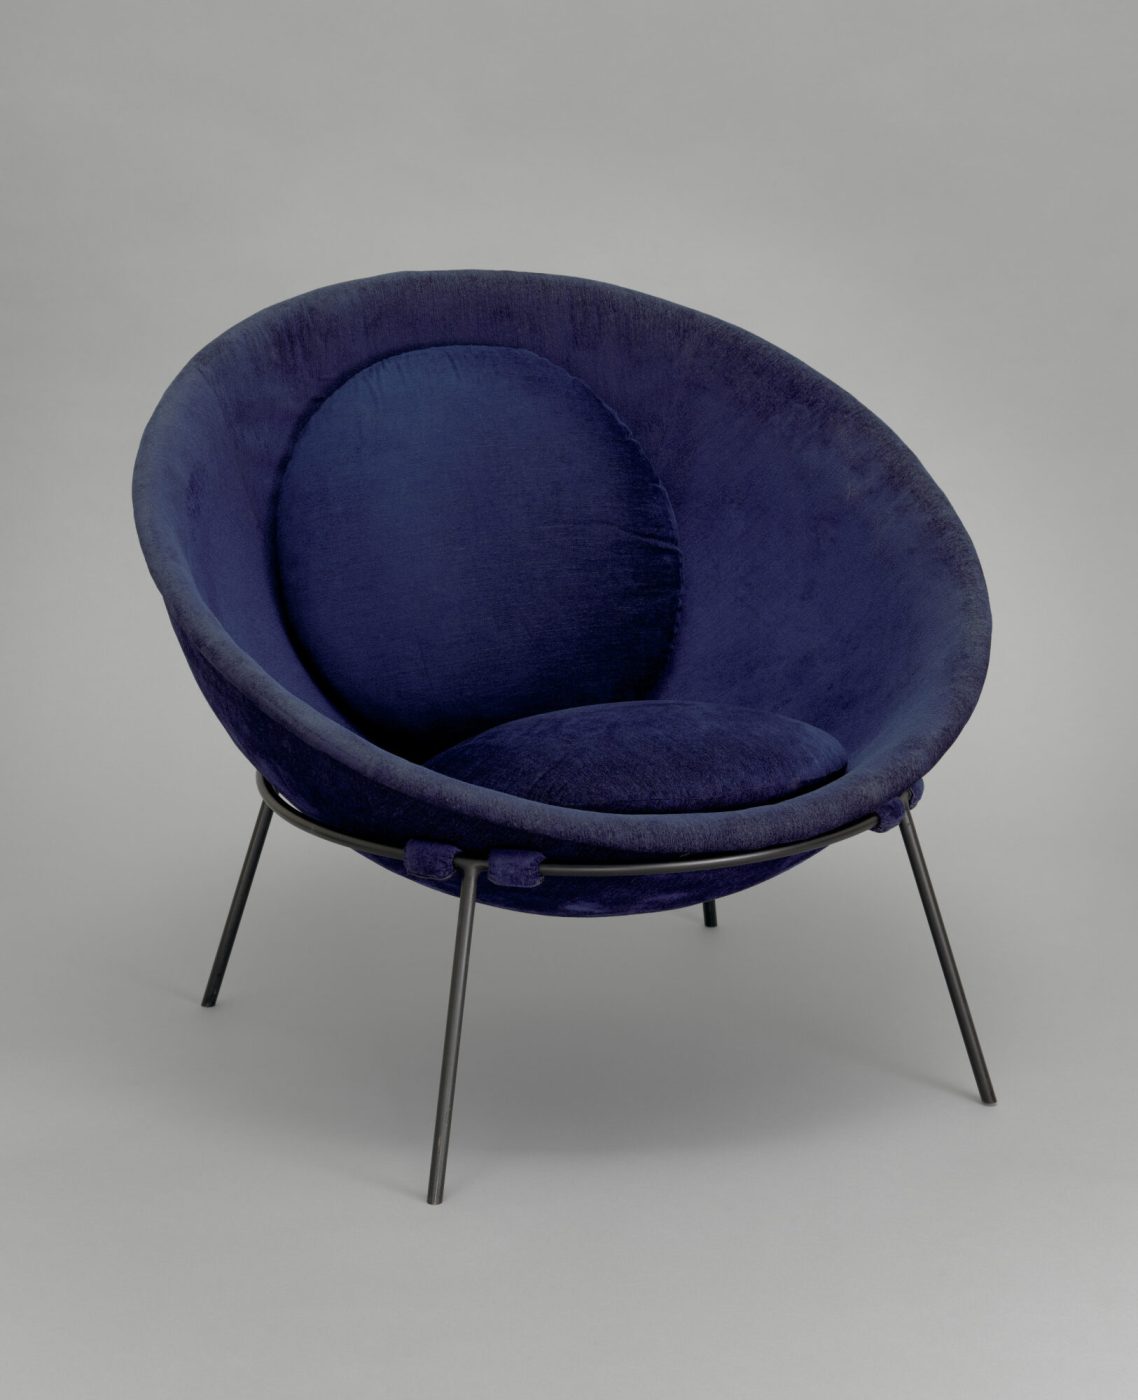 Italian-born Brazilian designer LINA BO BARDI's 1951 Bowl chair